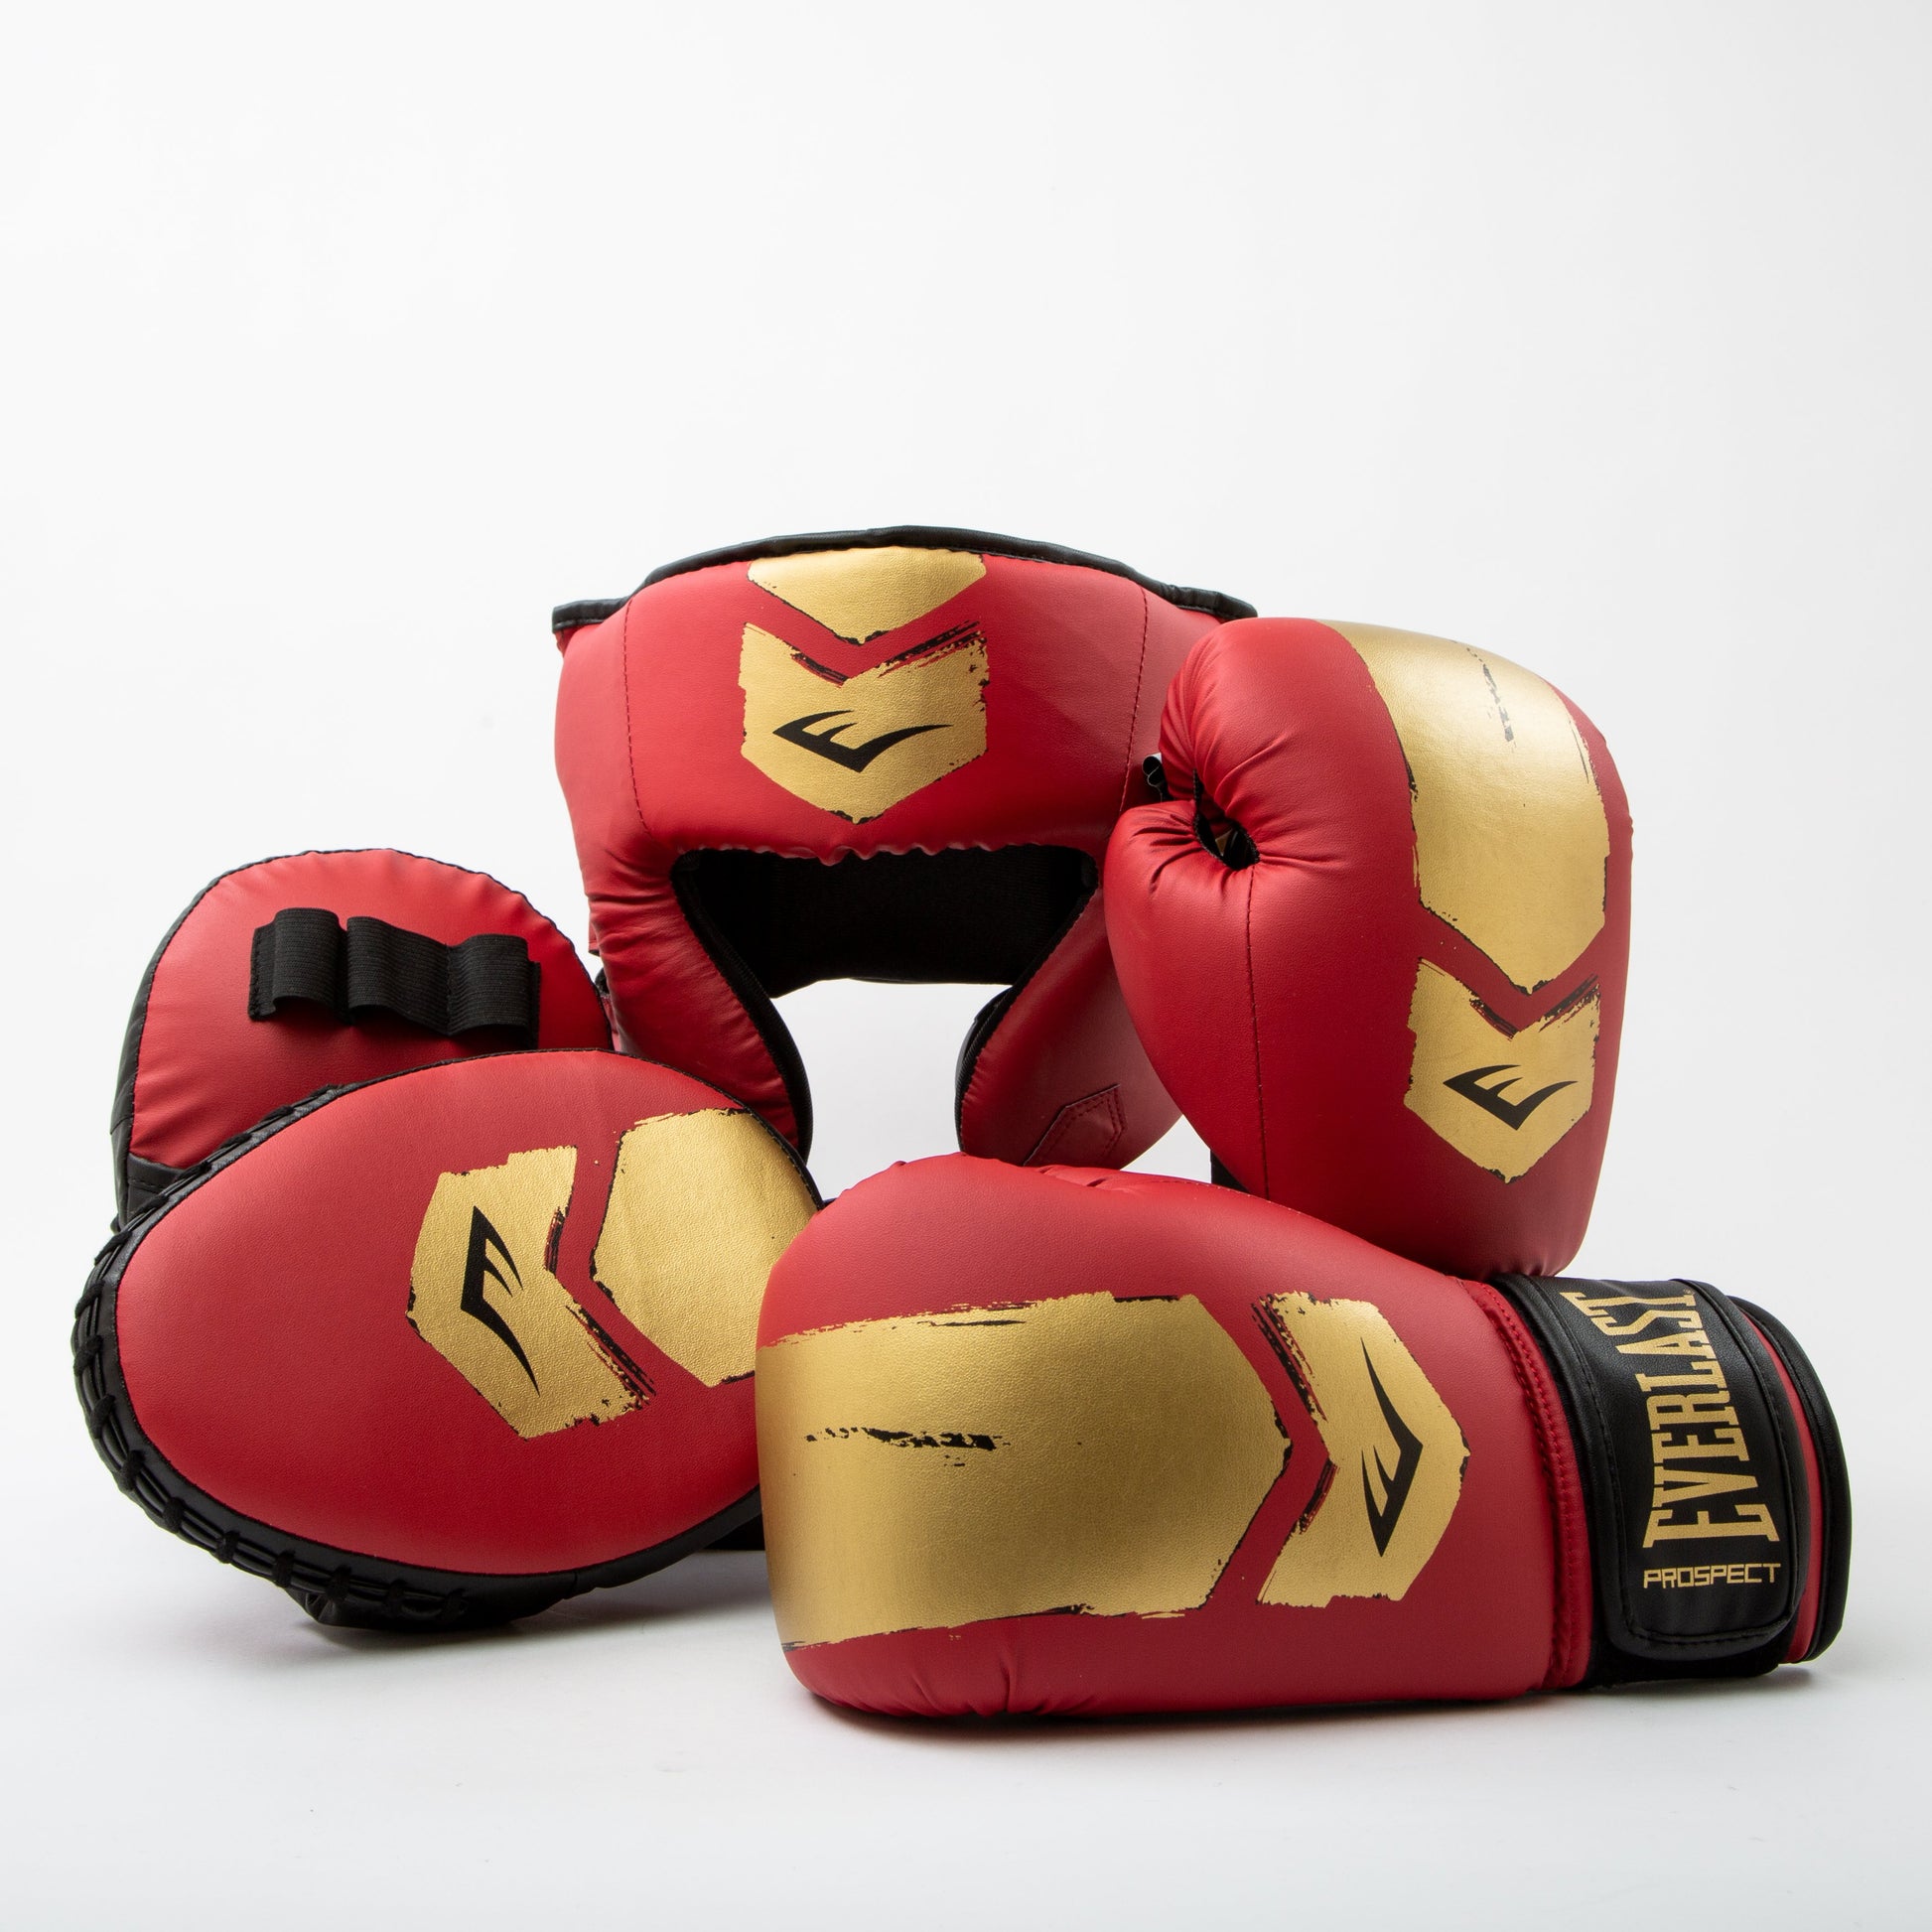 Prospect 2 Boxing Kit - Everlast